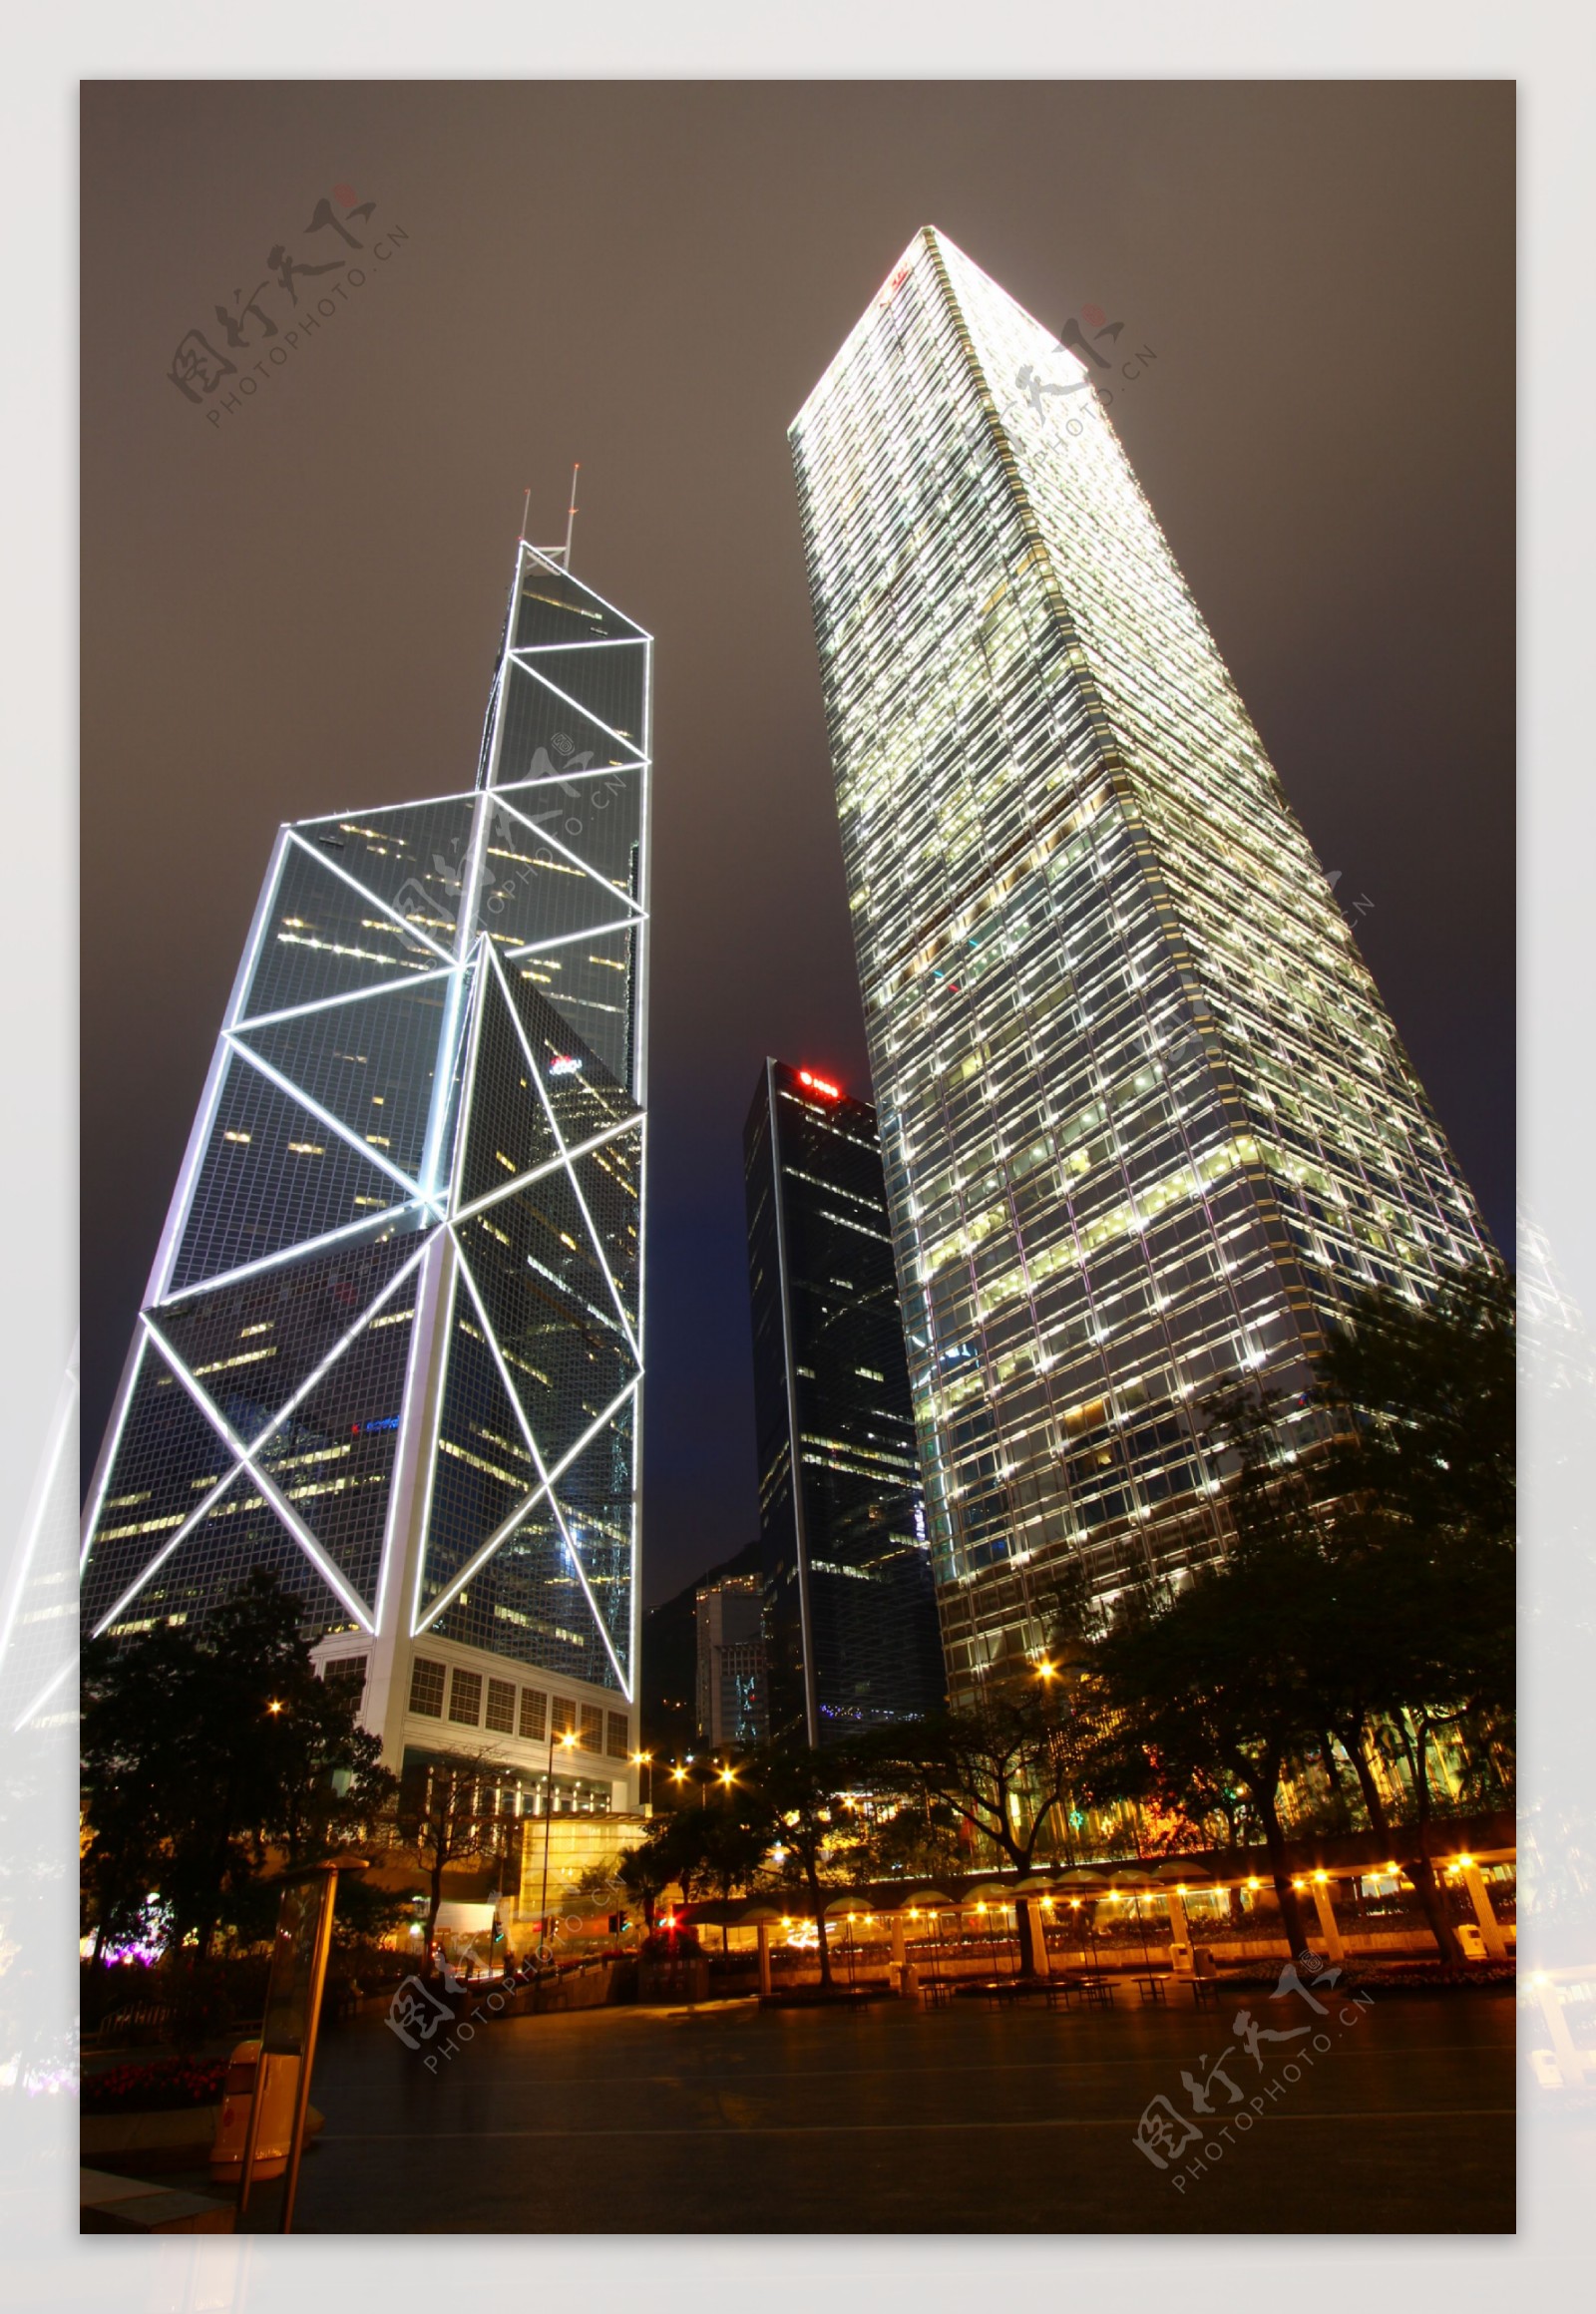 夜幕下的香港图片